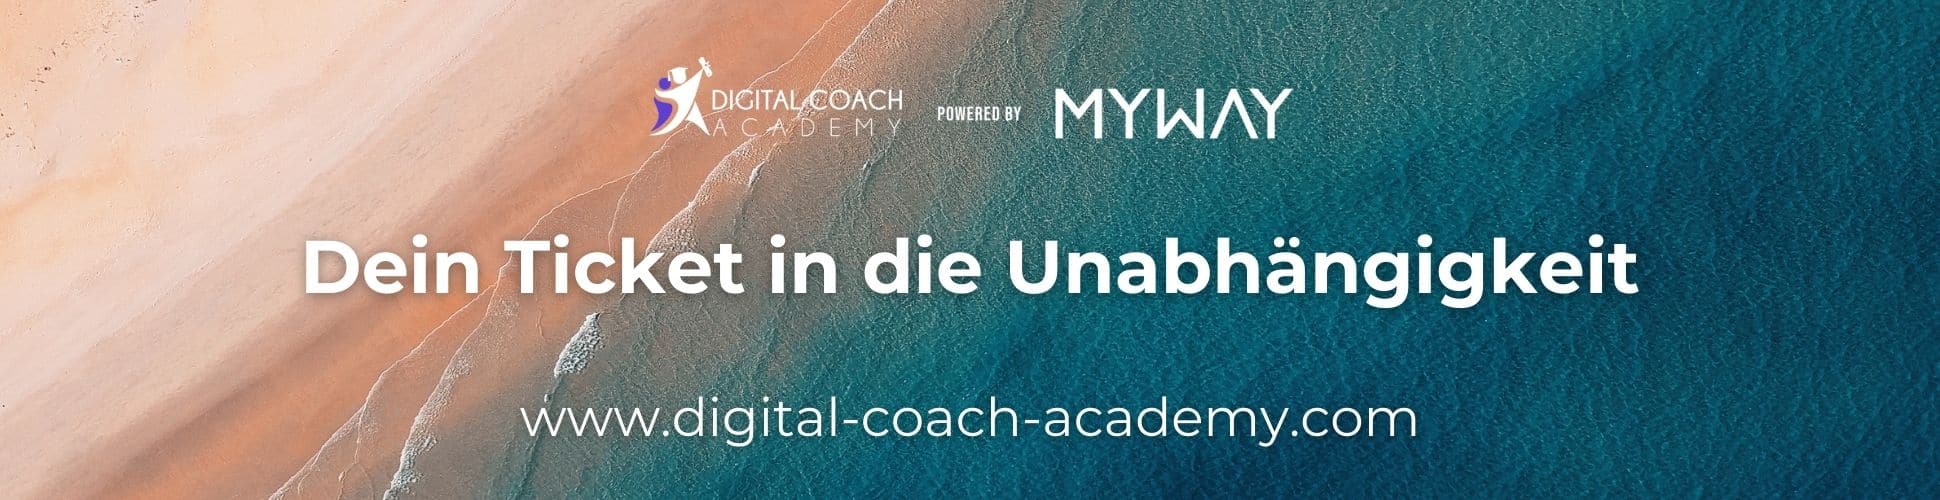 myway digital banner digital coach academy dein ticket in die unabhängigkeit